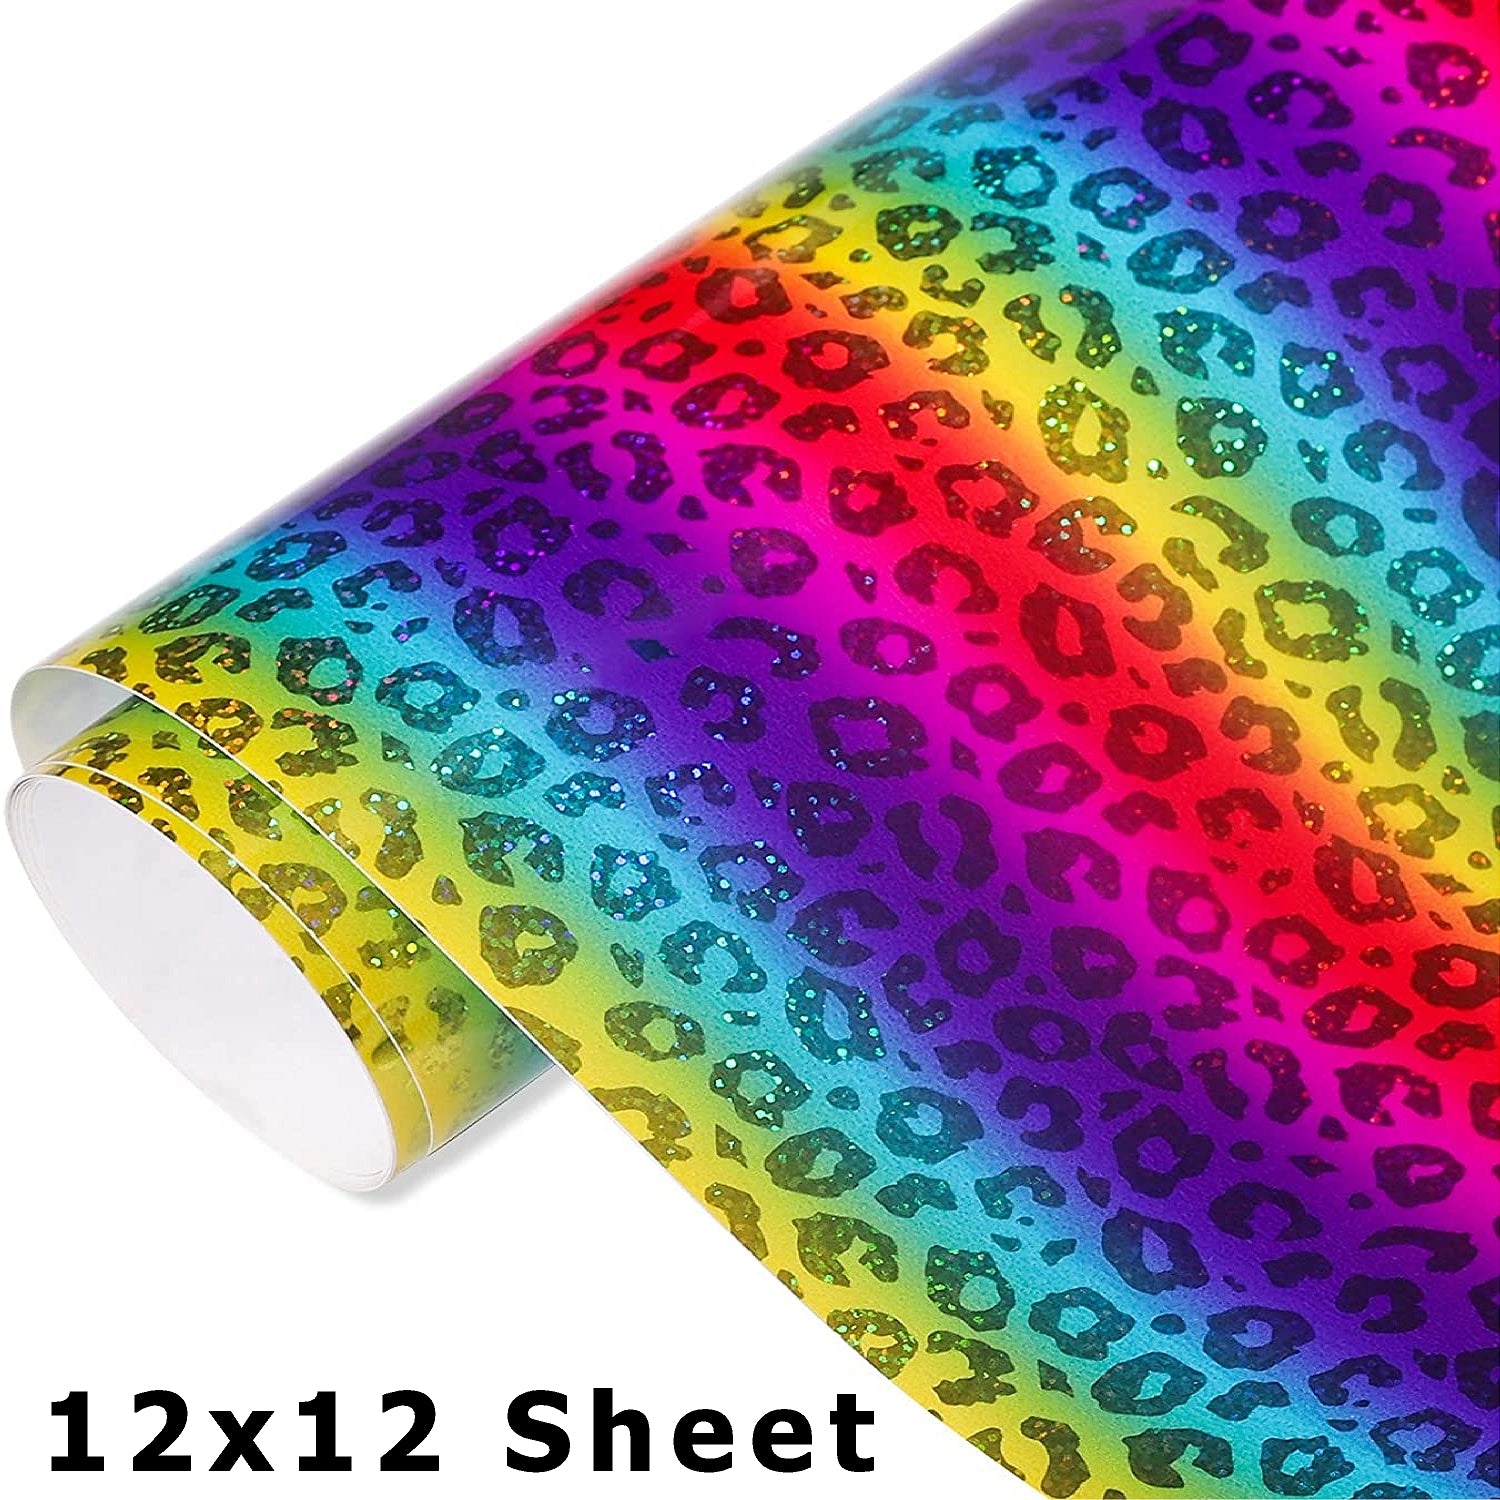  Voyyphixa Holographic Permanent Vinyl Sheets Rainbow